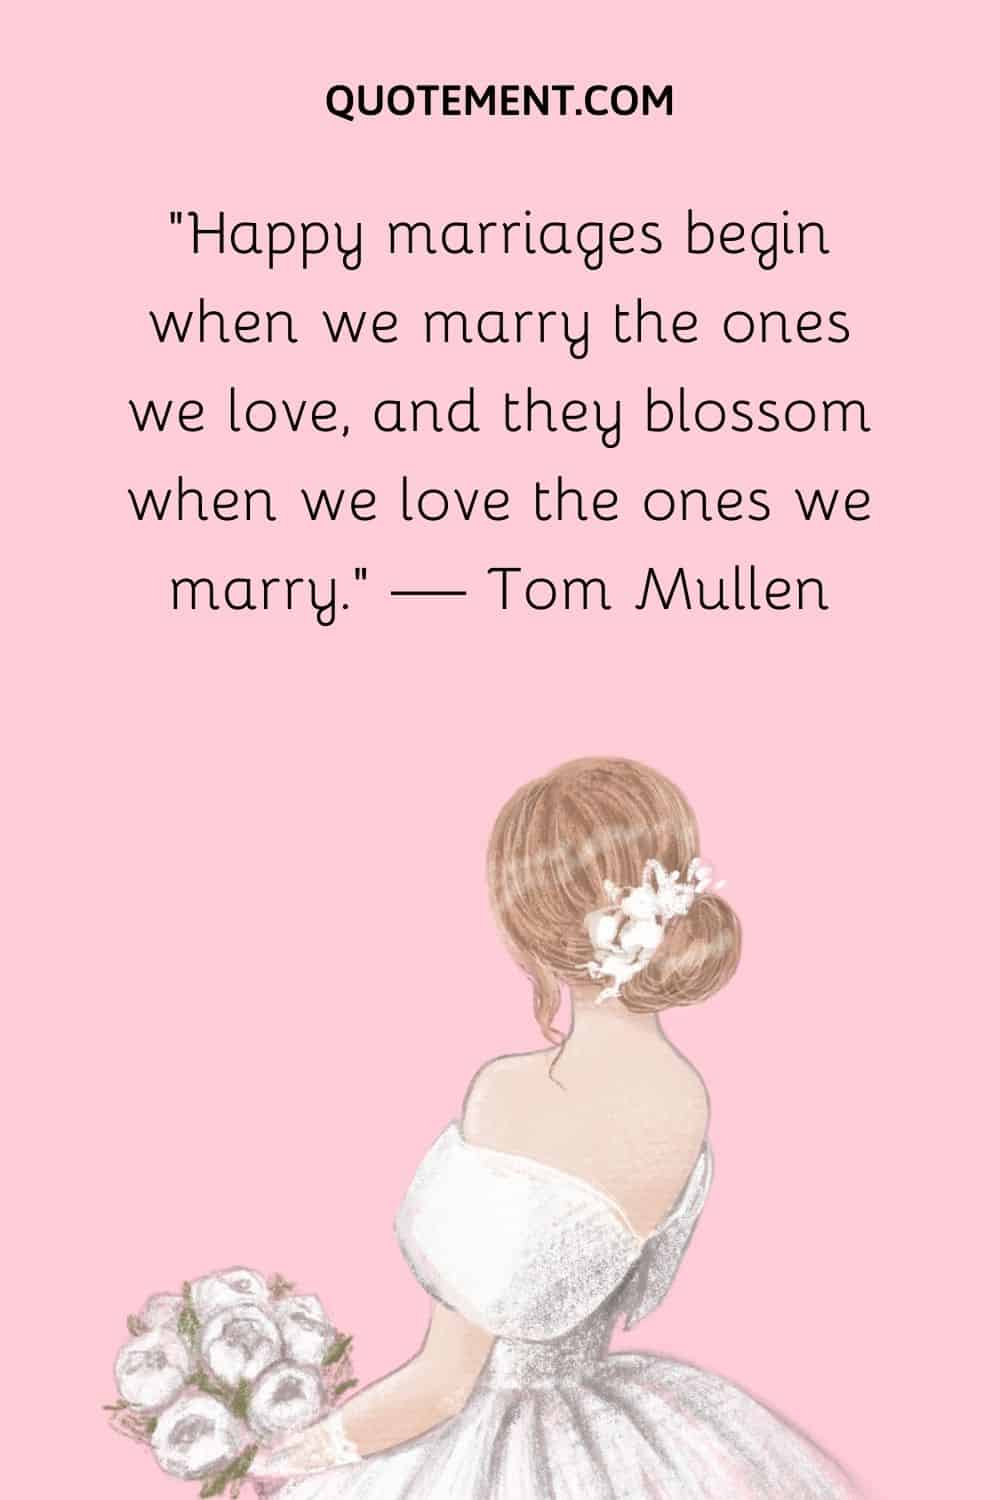 Happy marriages begin when we marry the ones we love, and they blossom when we love the ones we marry. — Tom Mullen